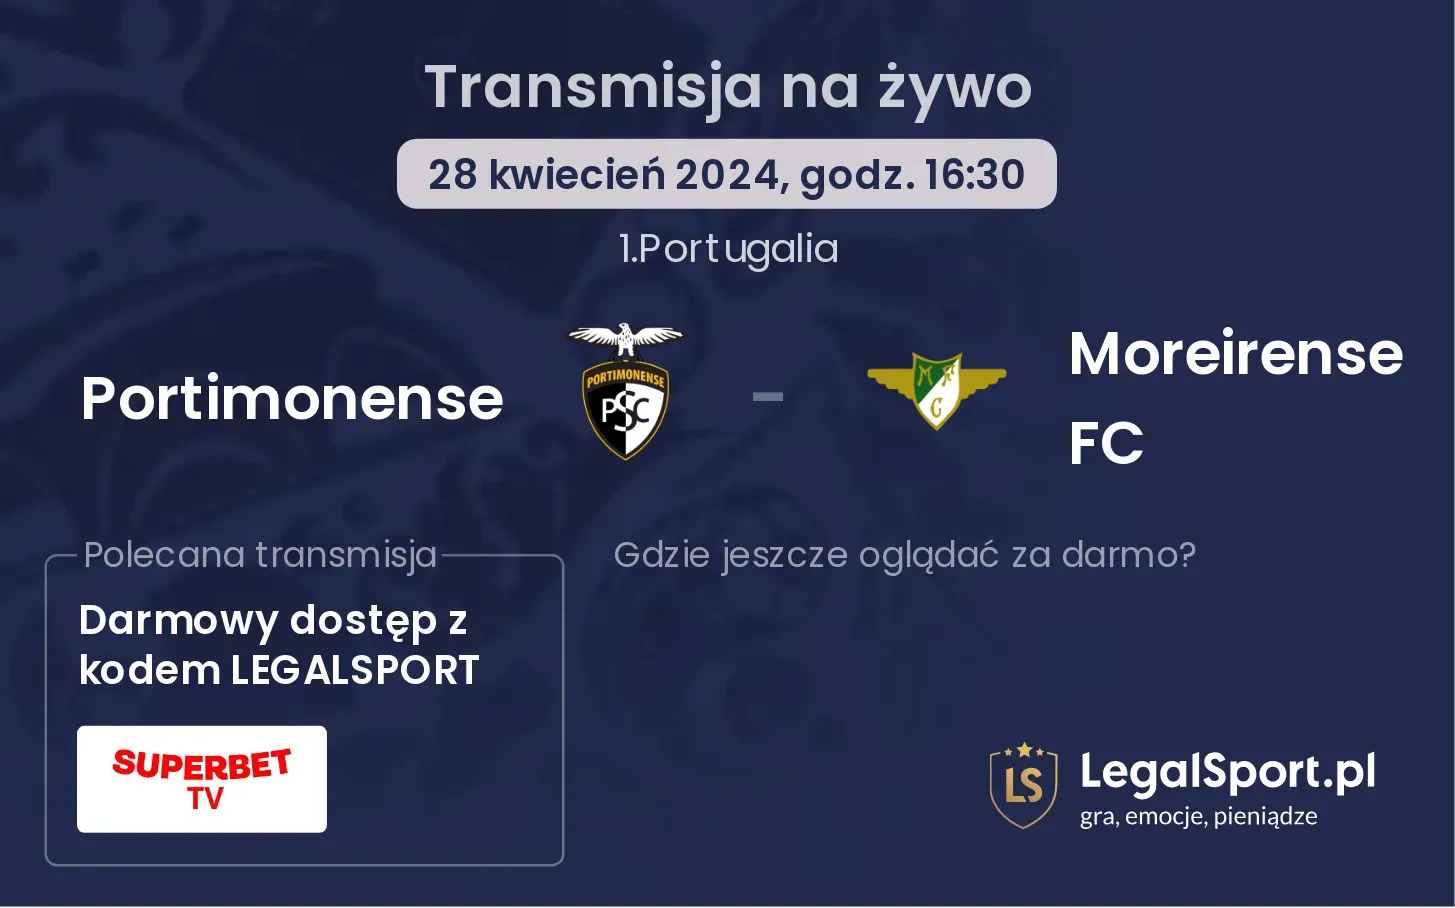 Portimonense - Moreirense FC transmisja na żywo